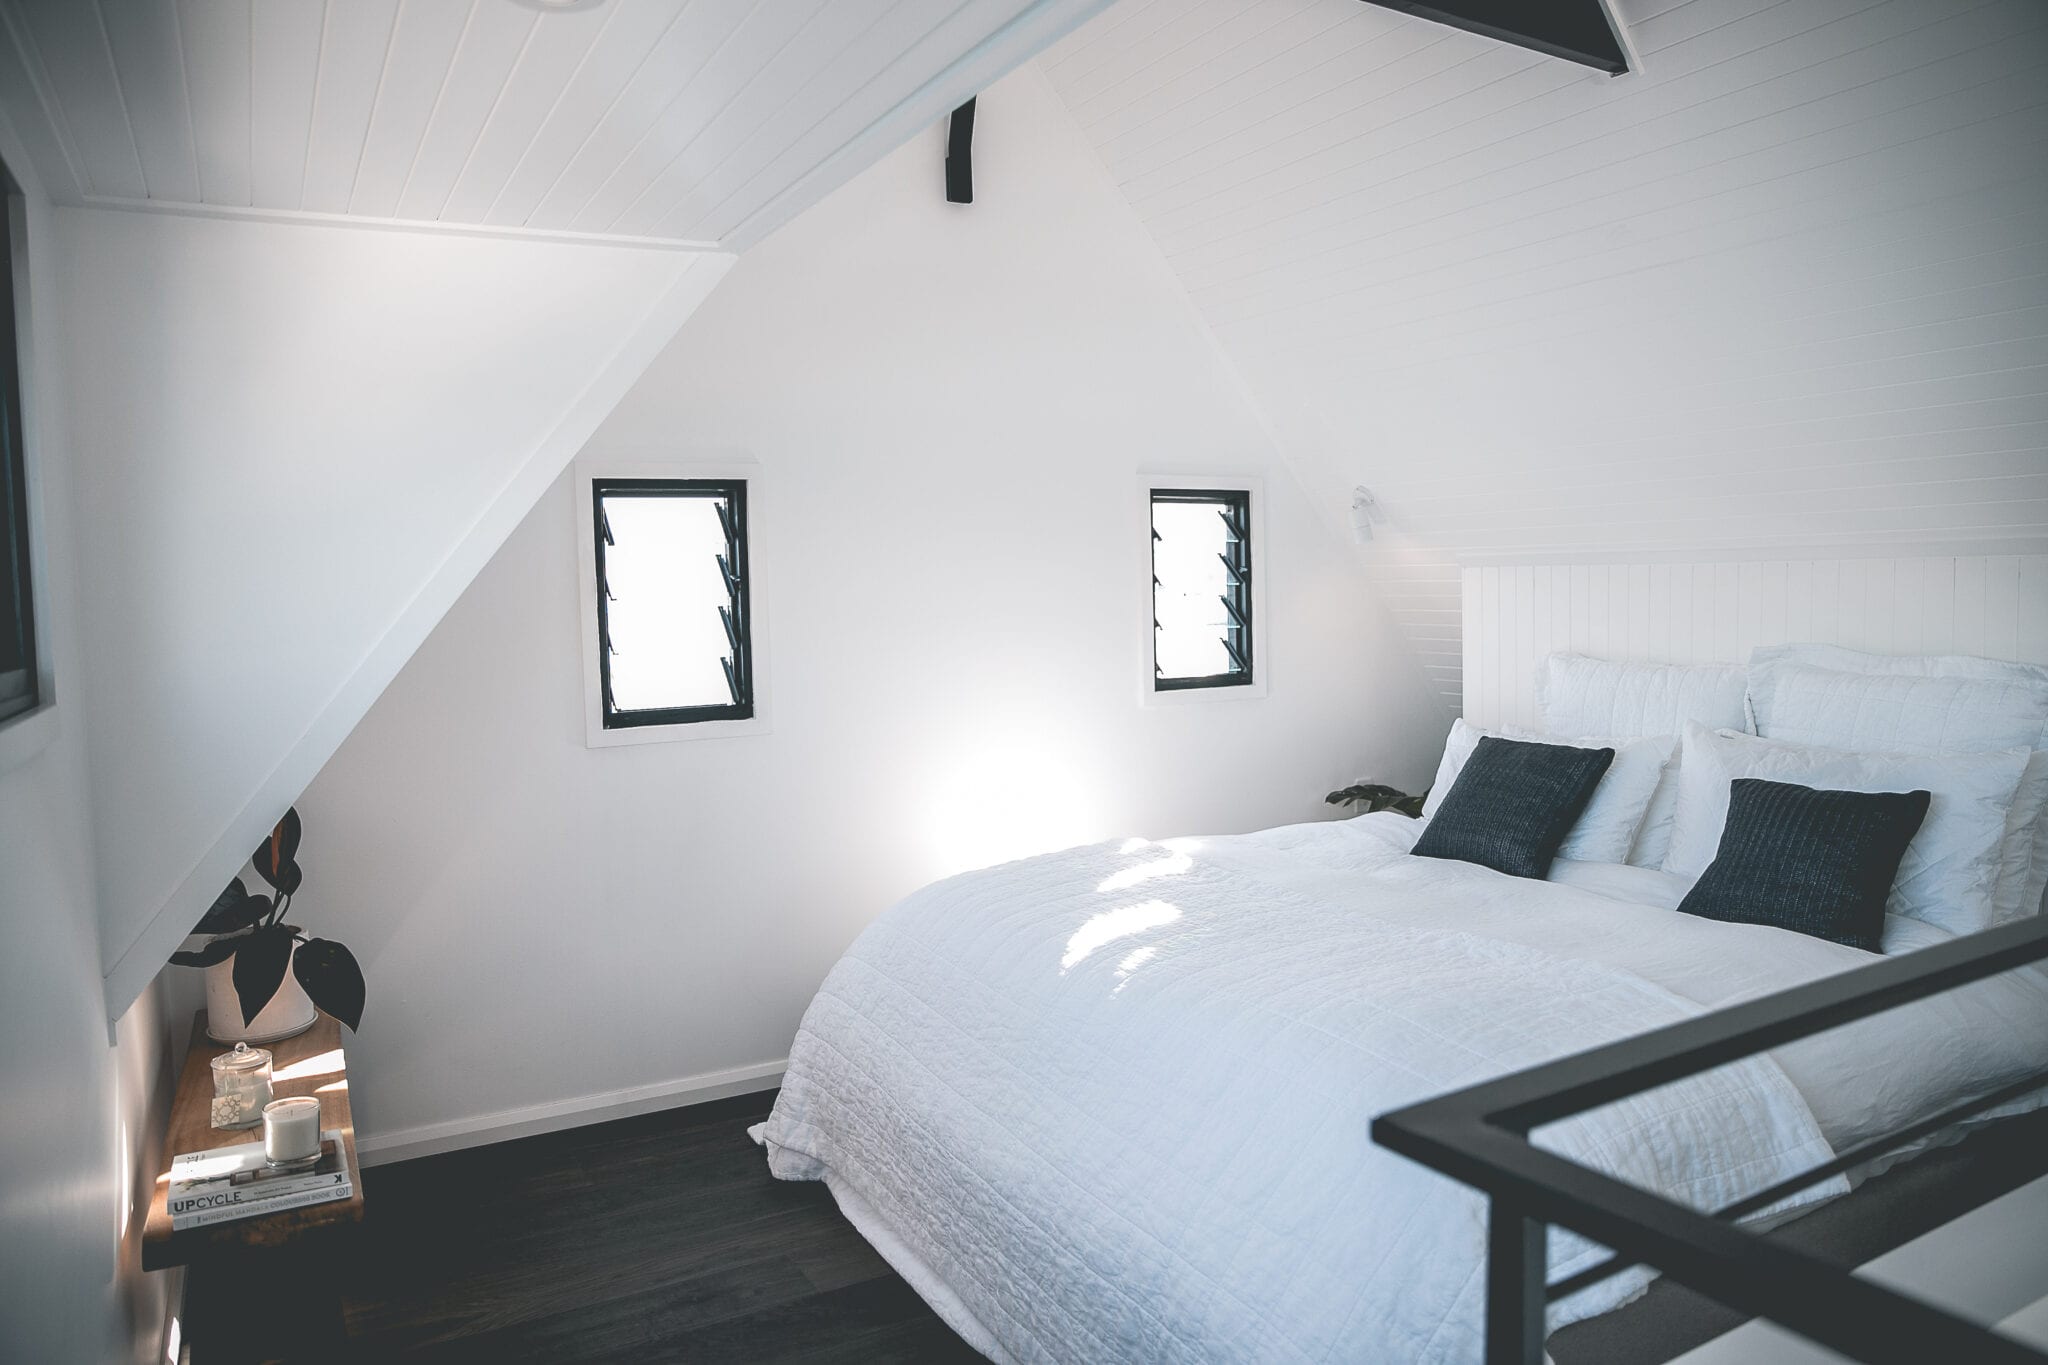 Drijvende villa, <strong>Airbnb Finds:</strong> slaap tussen superjachten in een drijvende villa